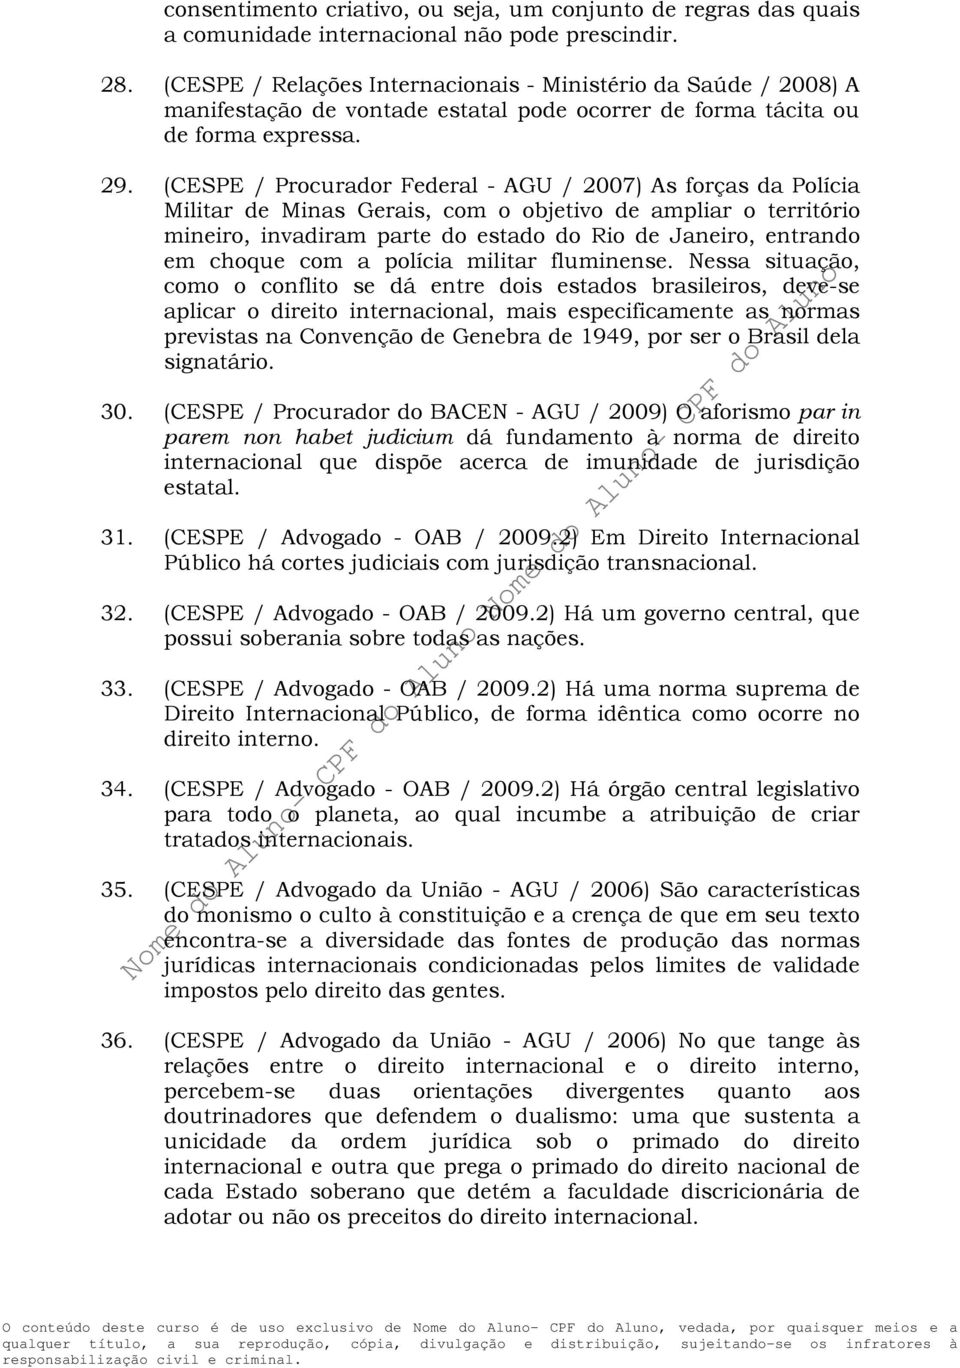 (CESPE / Procurador Federal - AGU / 2007) As forças da Polícia Militar de Minas Gerais, com o objetivo de ampliar o território mineiro, invadiram parte do estado do Rio de Janeiro, entrando em choque